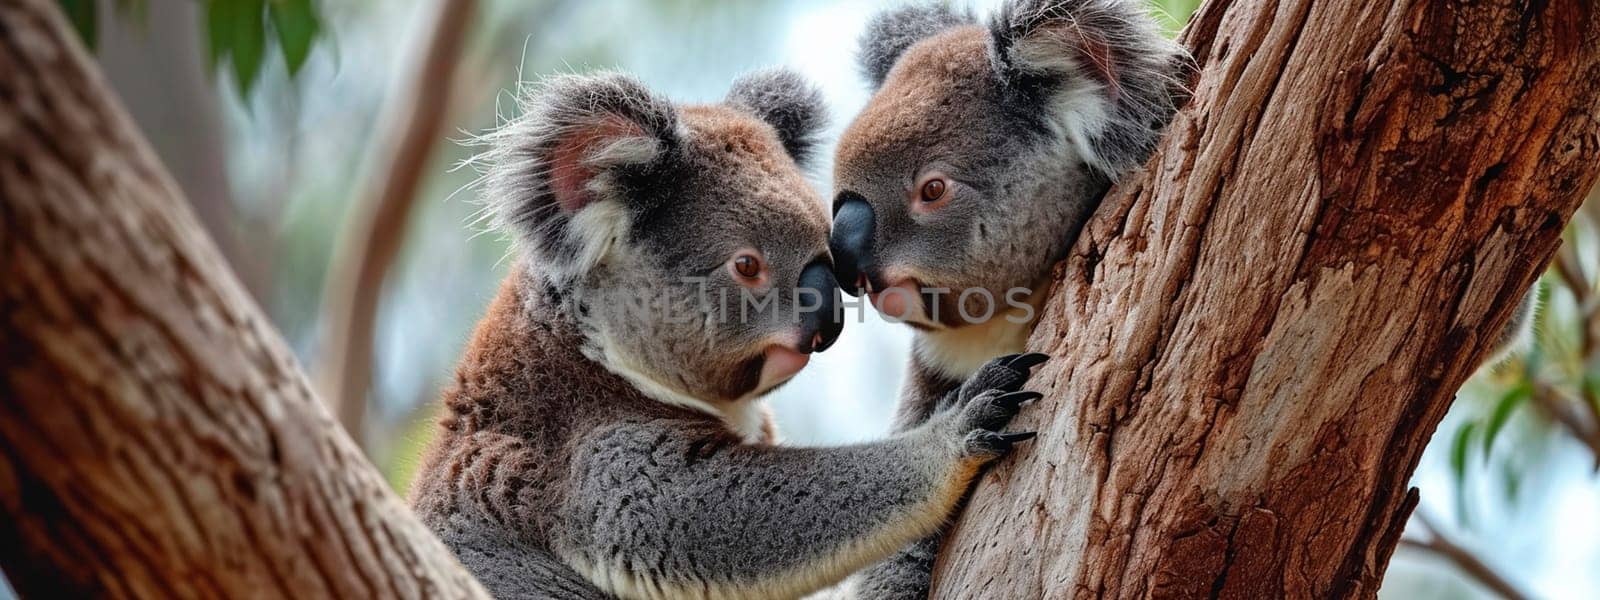 portrait of a koala in the wild. Selective focus. by yanadjana